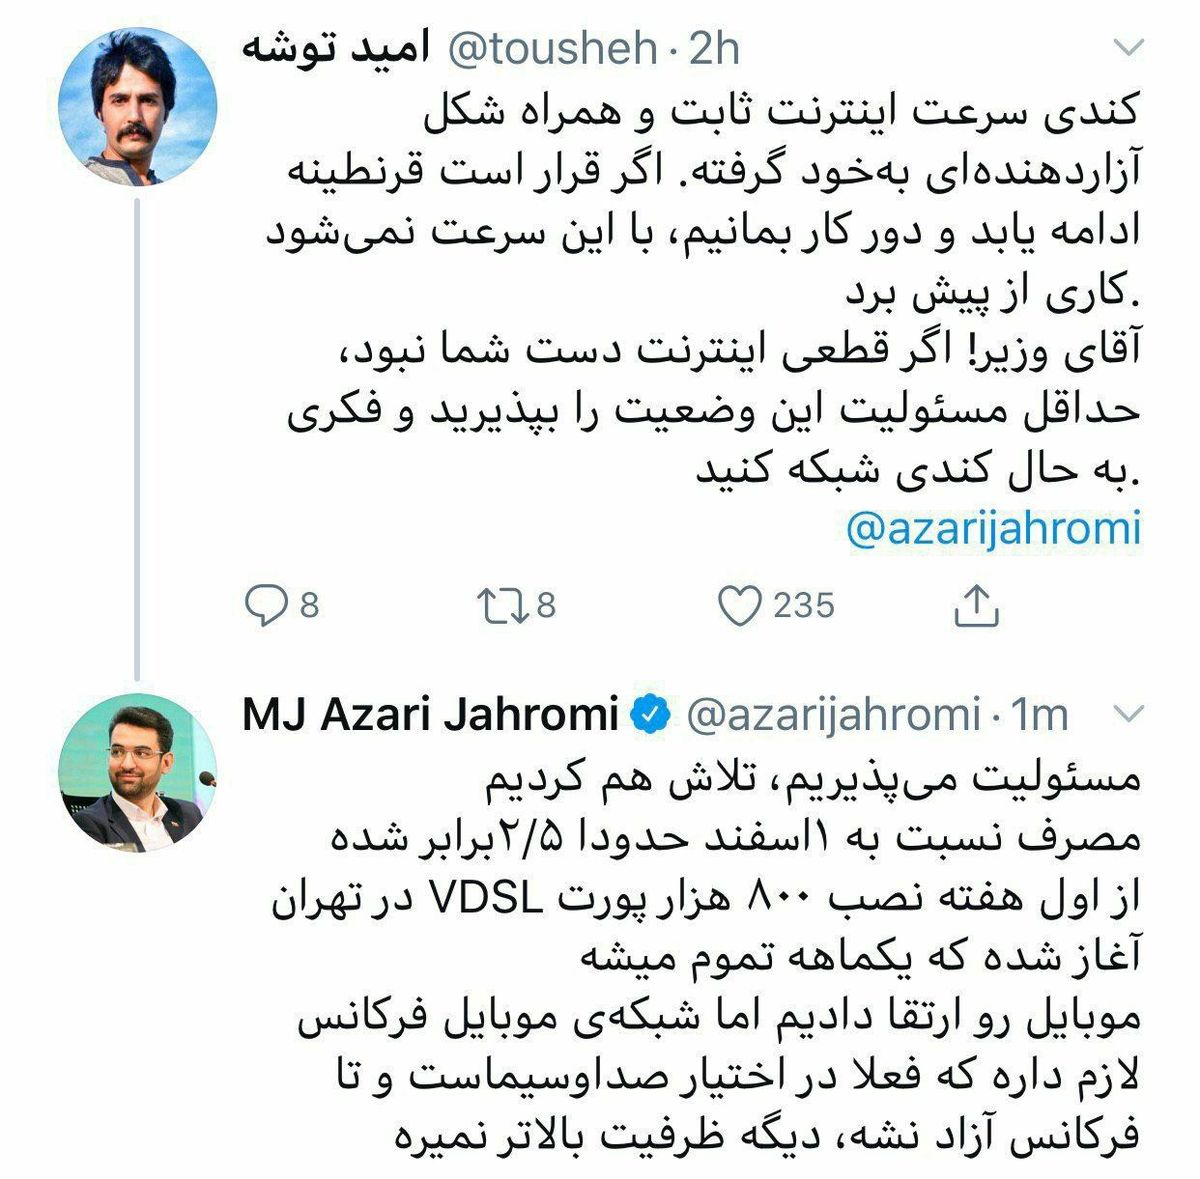 توییت آذری جهرمی و پاسخ به اعتراض یک خبرنگار در مورد سرعت اینترنت